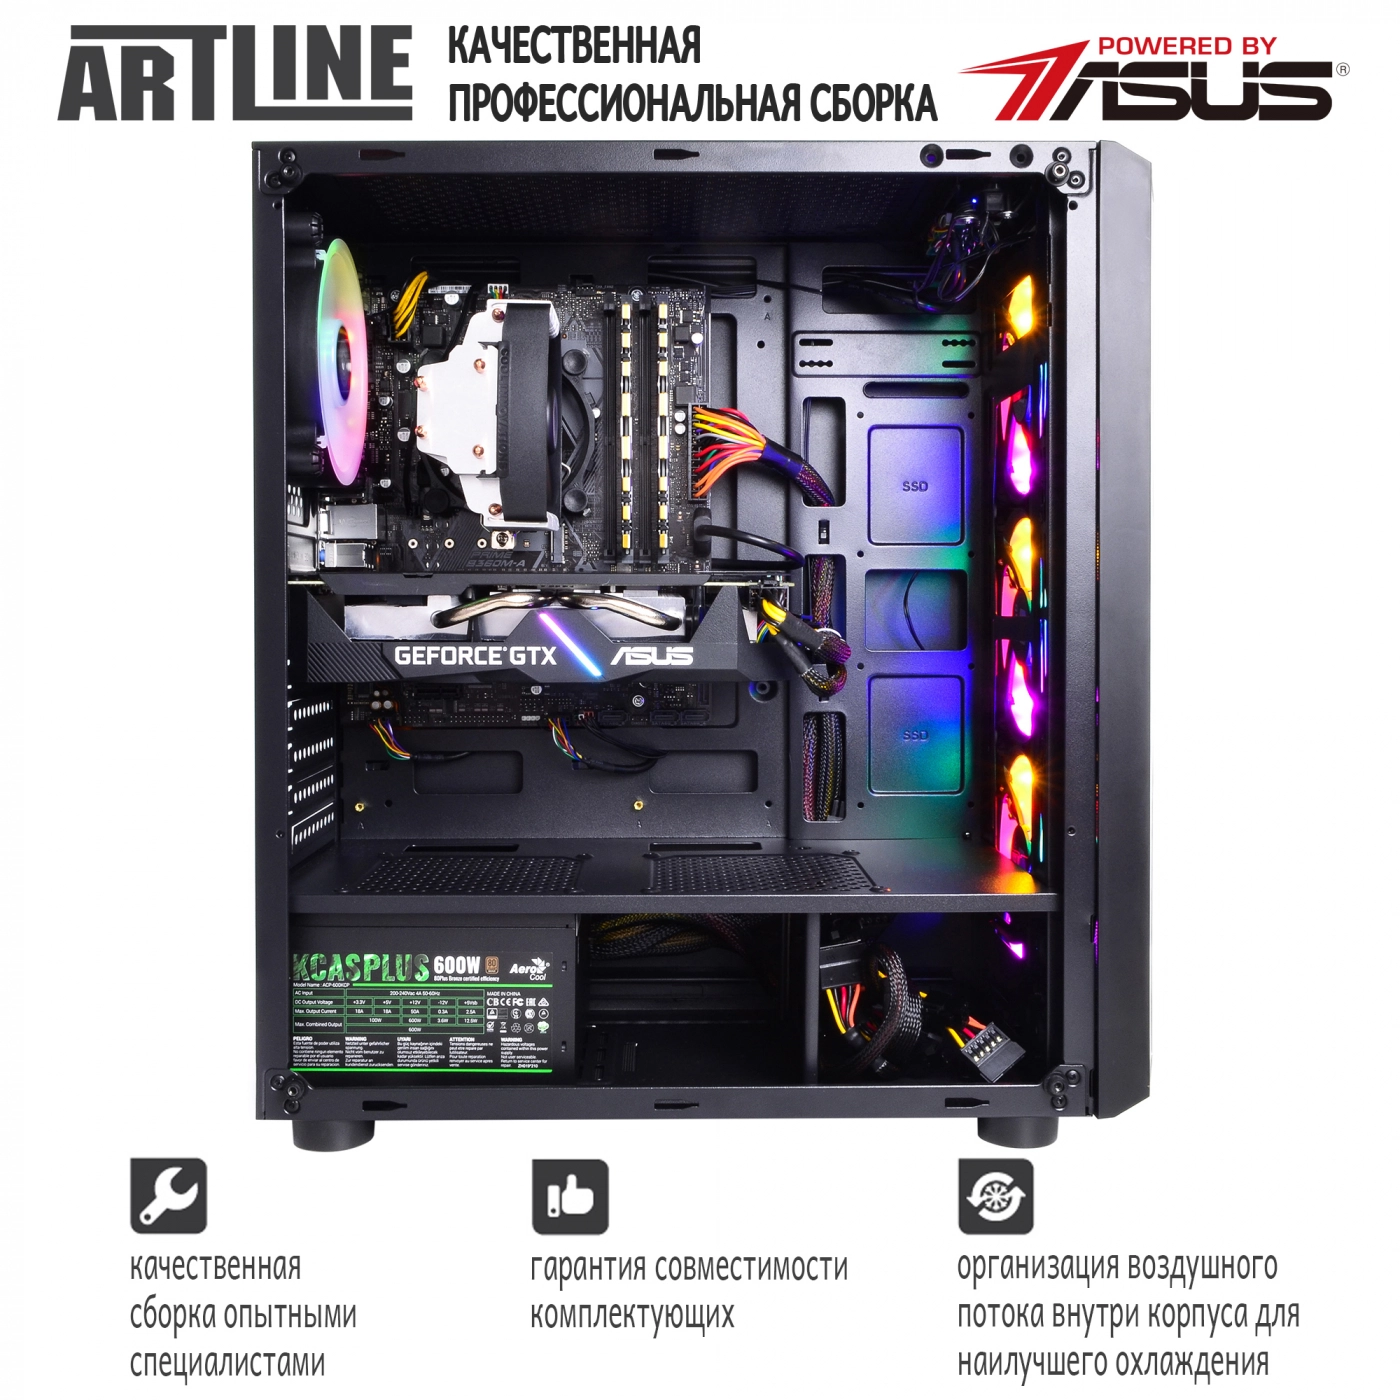 Купить Компьютер ARTLINE Gaming X39v43 - фото 9